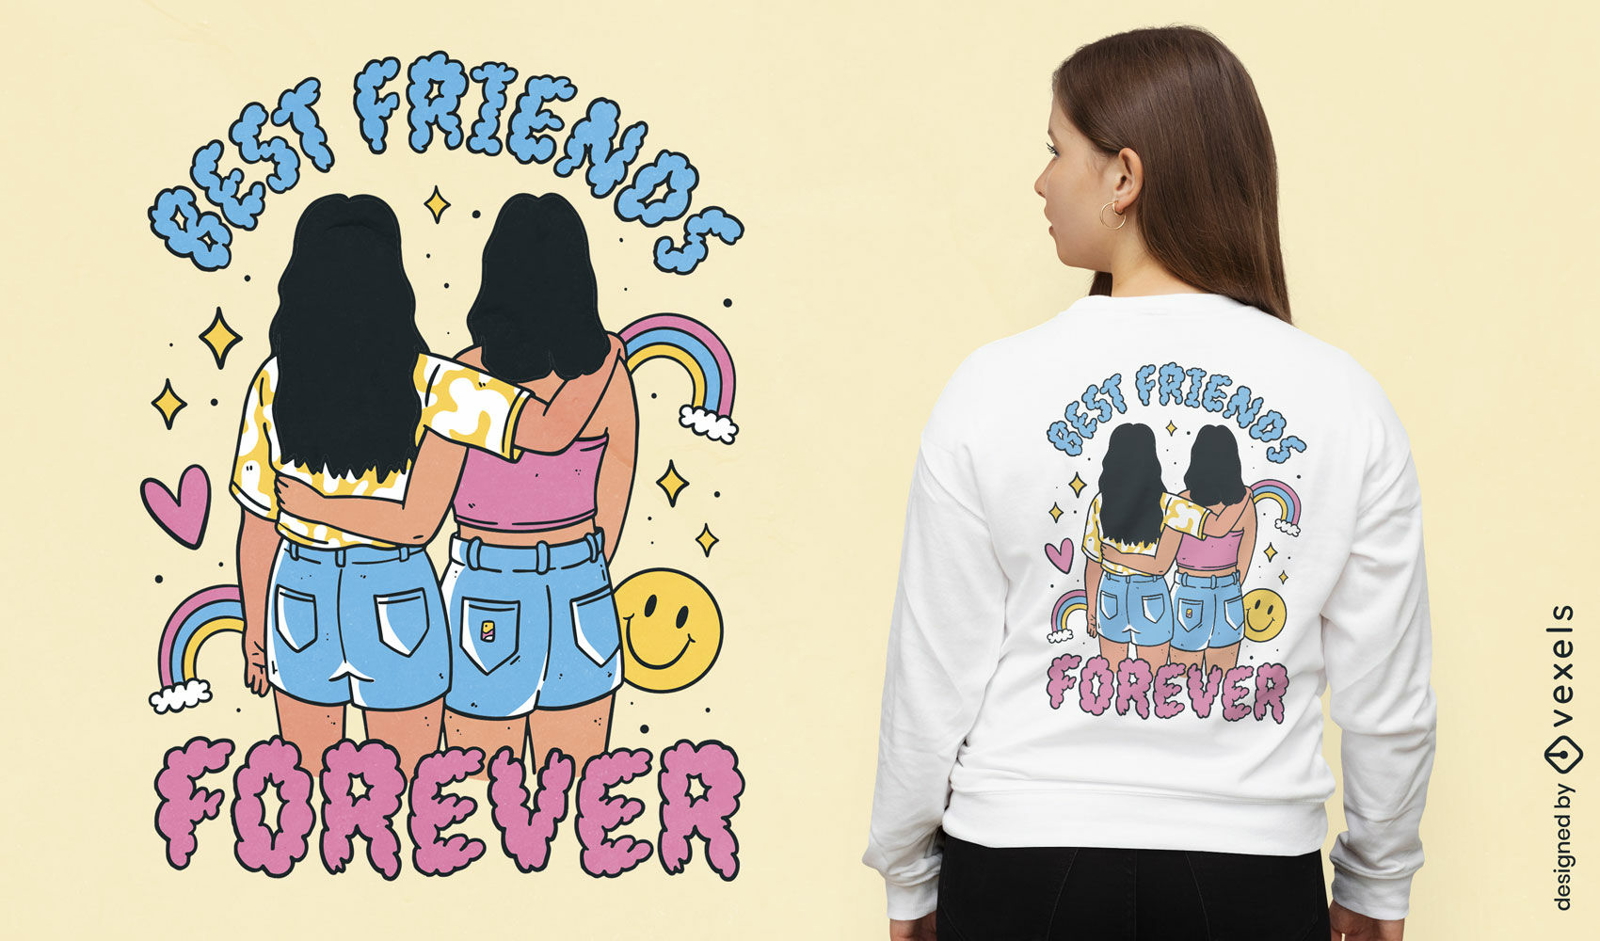 Friends Logo T-Shirt, Official Friends Merch